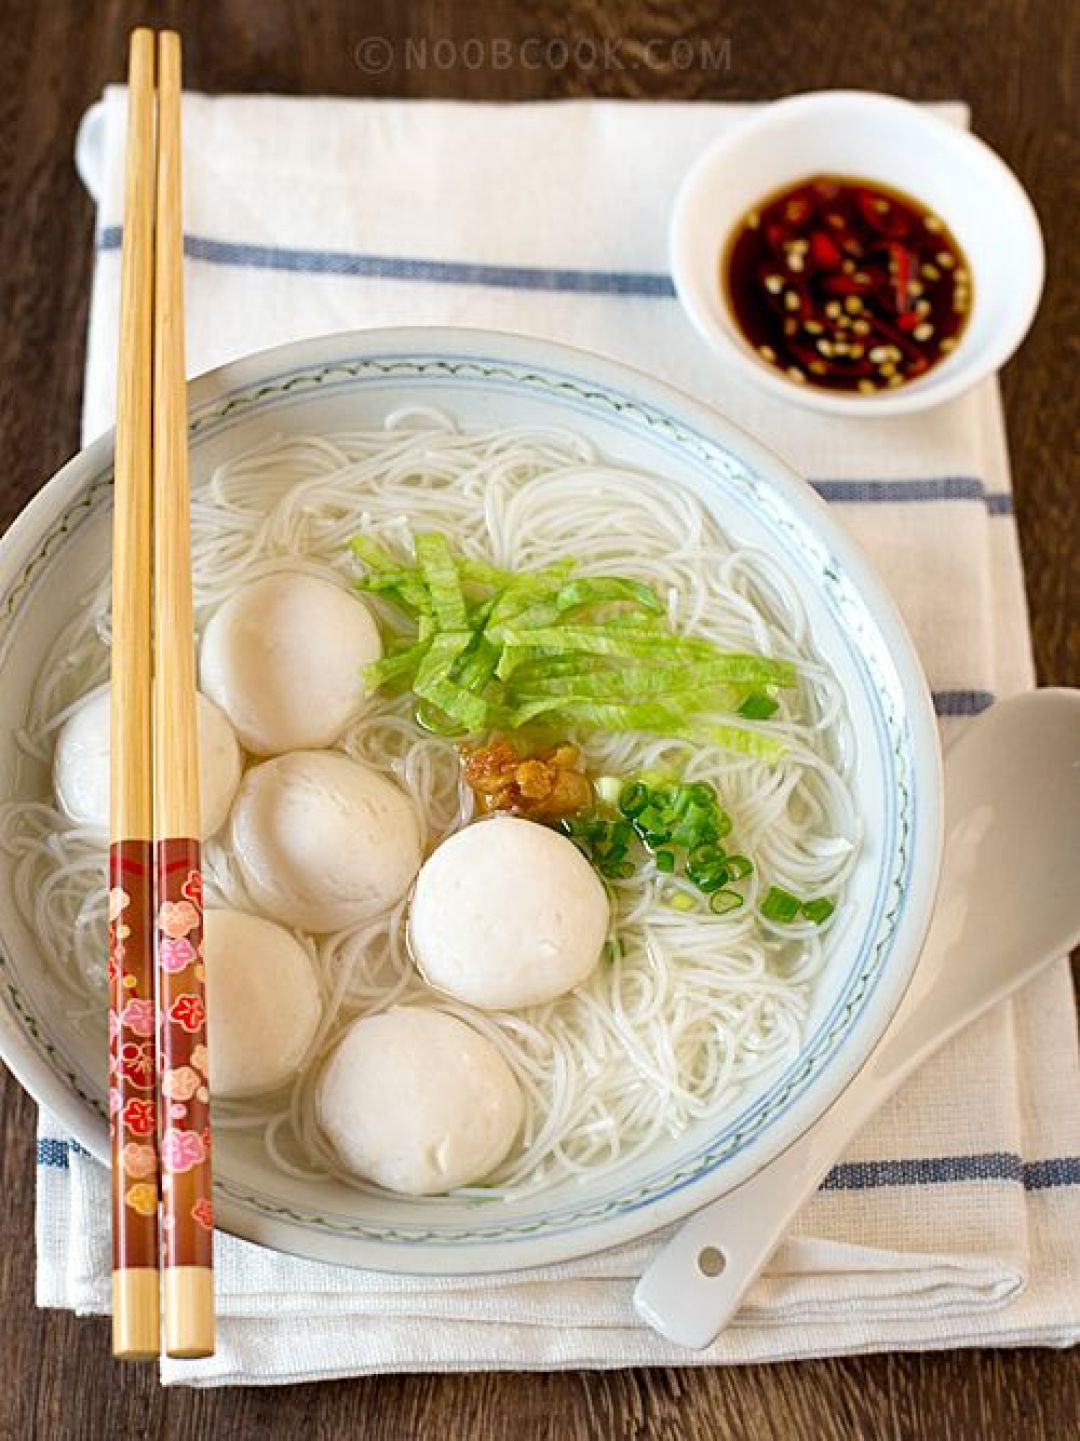 Kuliner China Timur Manis-Lembut-Image-1